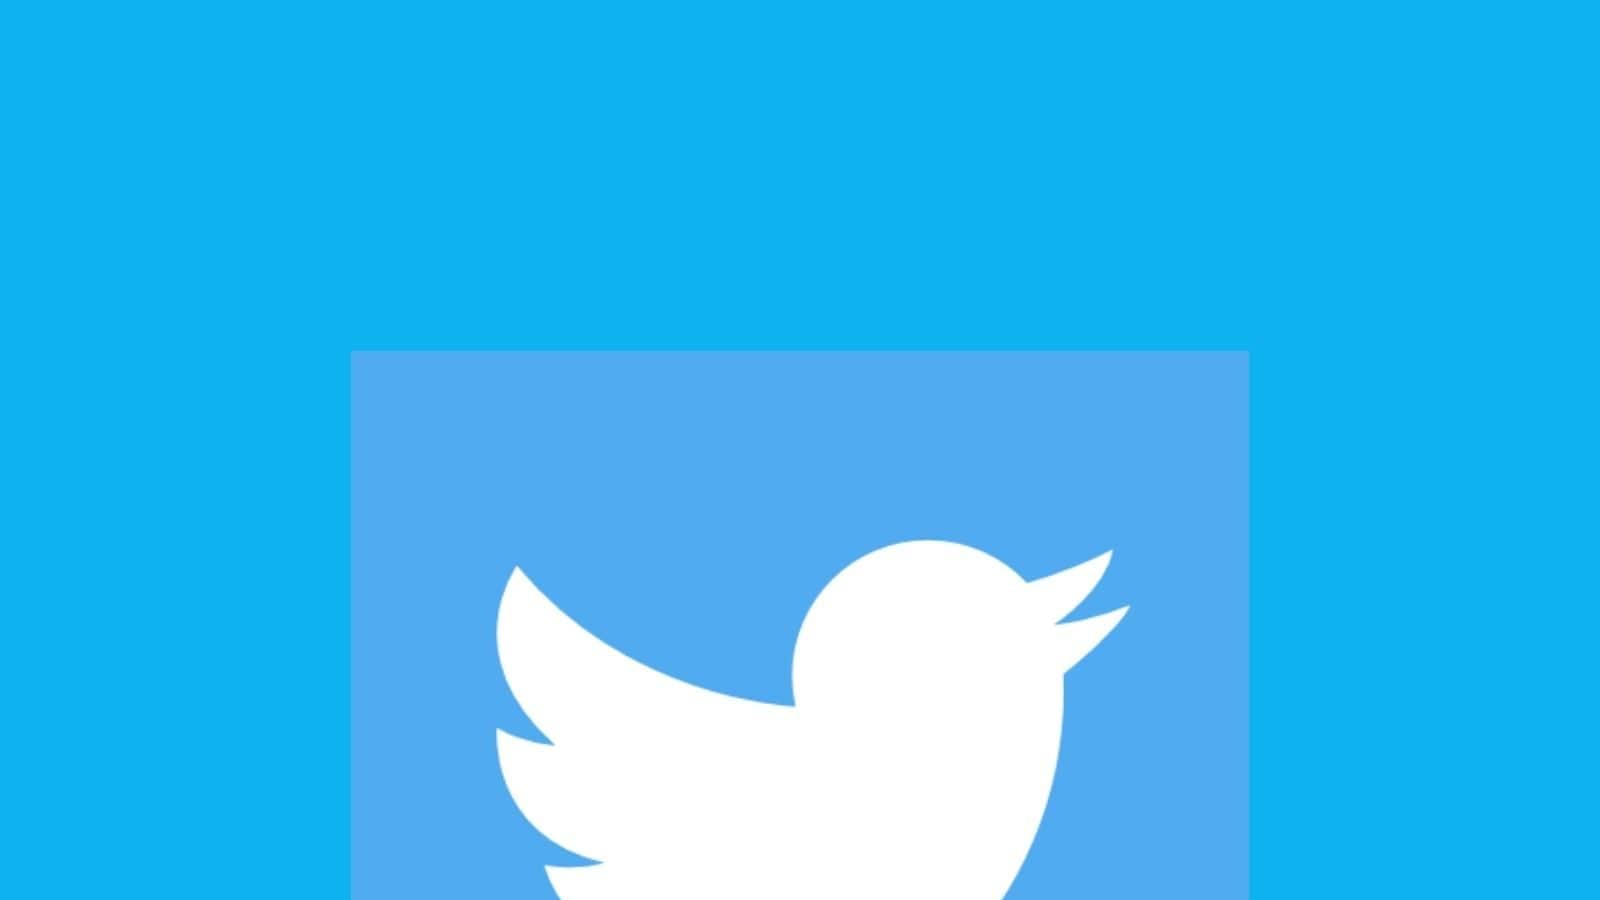 Twitter explora los tweets en coautoría para la próxima función de colaboración